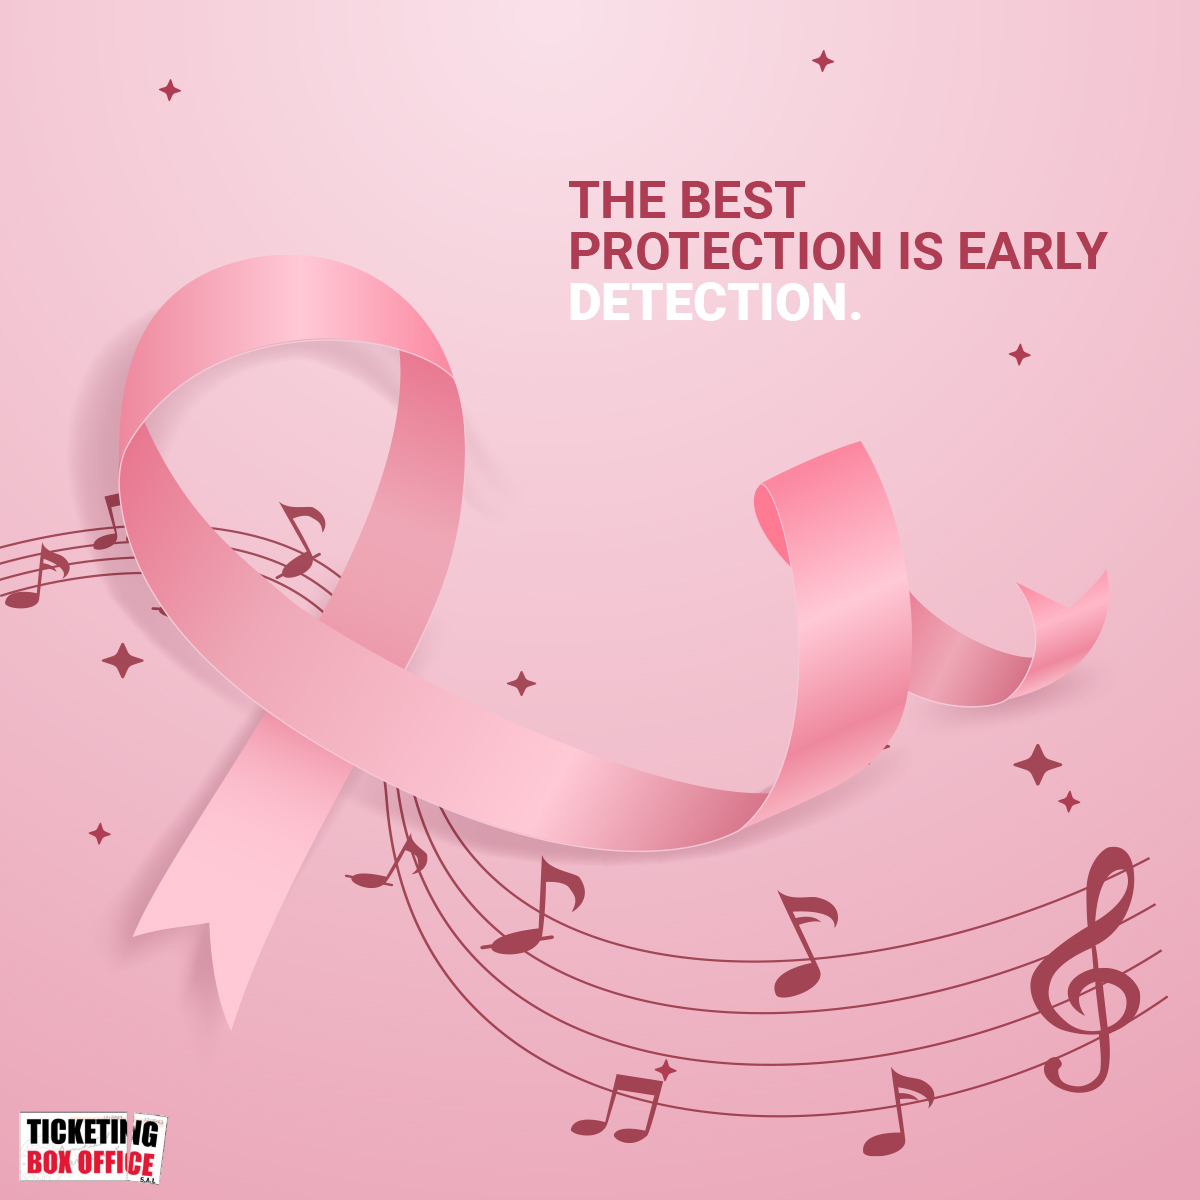 he Best Protection is Early Detection #pinkoctober #breastcancerawareness #breastcancer #cancer #breastcancersurvivor